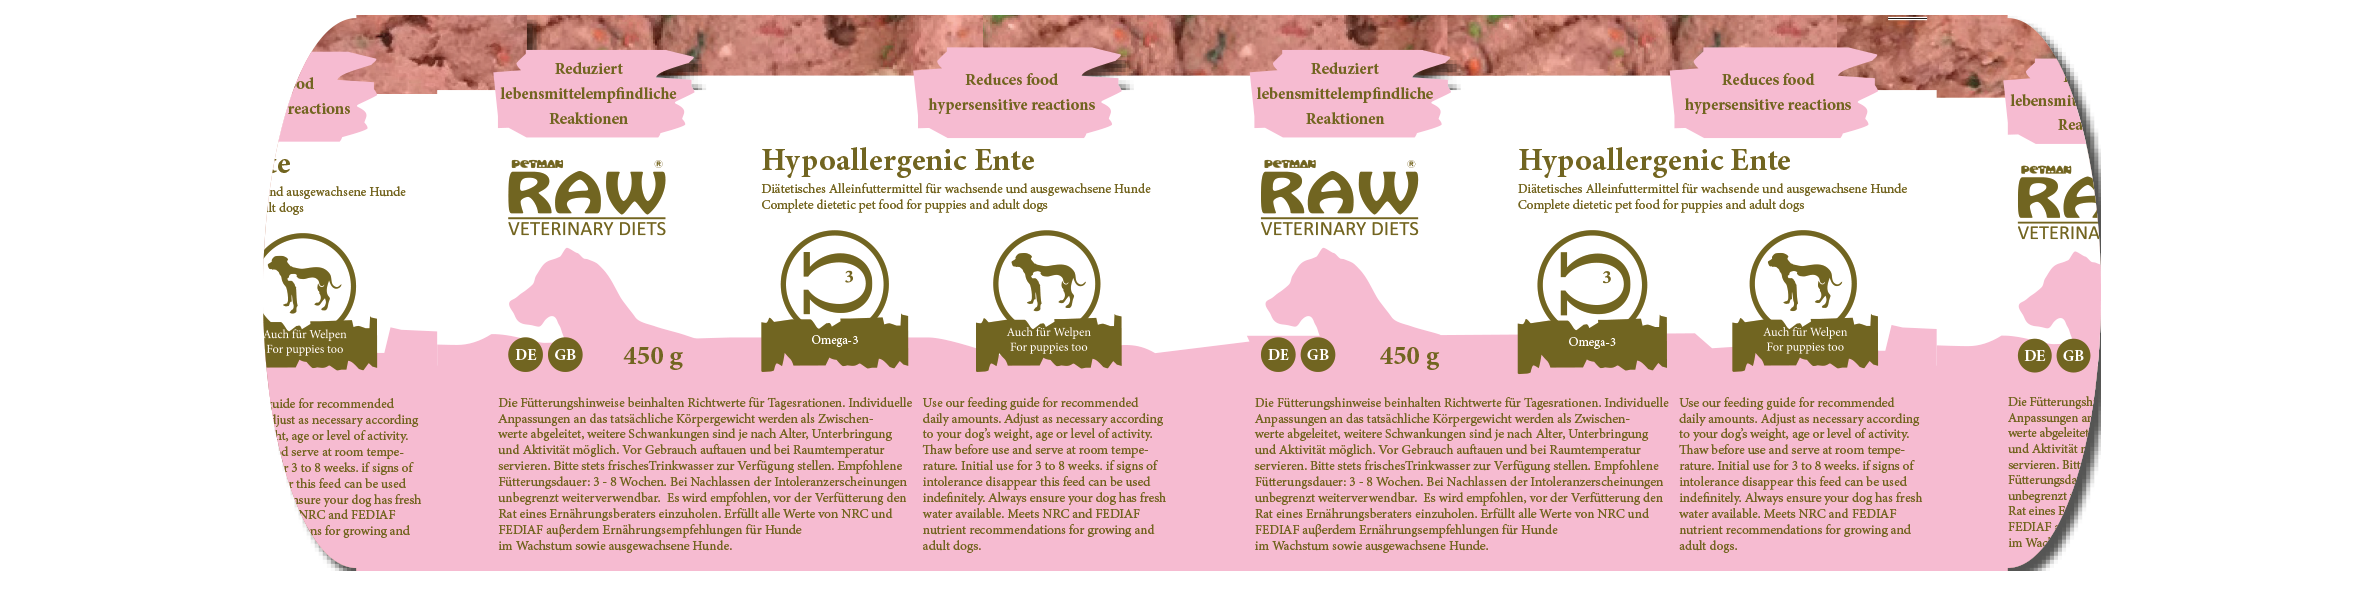 Raw Veterinary Diet 'Hypoallergenic Ente' 10x450g